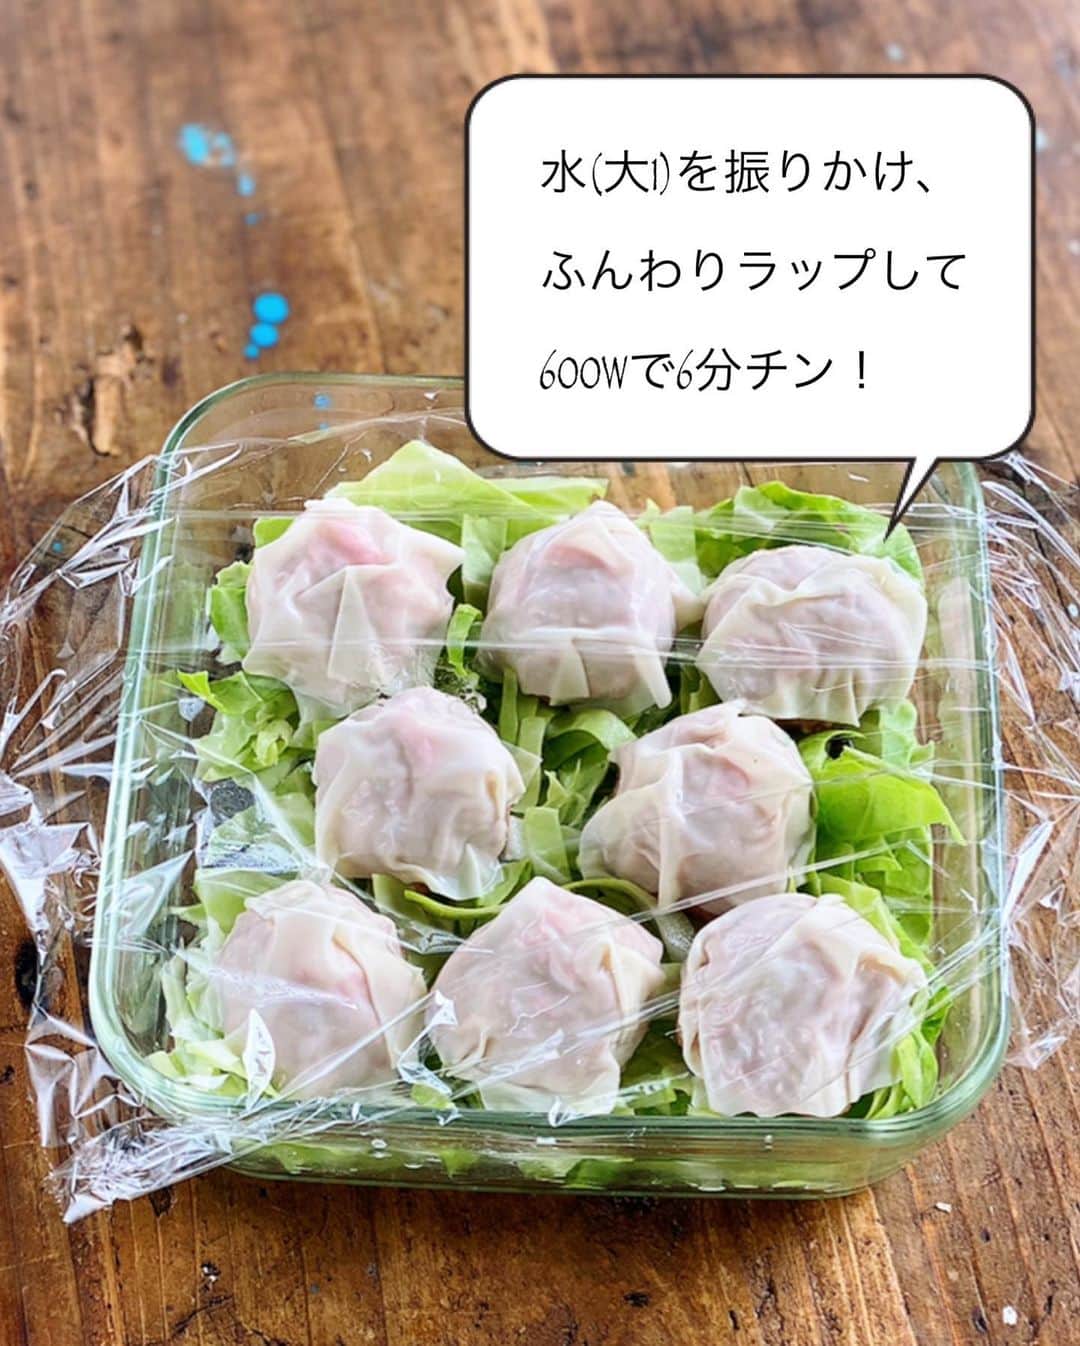 Mizuki【料理ブロガー・簡単レシピ】さんのインスタグラム写真 - (Mizuki【料理ブロガー・簡単レシピ】Instagram)「・﻿ 【レシピ】ーーーーーーーーーーーー﻿ ♡レンジde６分♡かにシュウマイ♡﻿ ーーーーーーーーーーーーーーーーー﻿ ﻿ ﻿ ﻿ おはようございます(*^^*)﻿ ﻿ 今日ご紹介させていただくのは﻿ レンジで作る［かにシュウマイ］﻿ (といってもカニカマですが•••笑)﻿ 一見難しそうに見えますが﻿ これも超簡単に作れますよ〜♩﻿ ﻿ タネは一気に混ぜるだけ！﻿ 皮はのせるだけ！！﻿ レンジで6分チンするだけでもう完成♡﻿ ﻿ 手作りはとっても美味しいので﻿ 是非お試し下さいね♩﻿ これおすすめです(*´艸`)﻿ ﻿ ﻿ ﻿ ーーーーーーーーーーーーーーーーーーーー﻿ 【2人分】﻿ ●豚ひき肉...150g﻿ ●カニカマ...40g﻿ ●玉ねぎ...1/6個﻿ ●酒・醤油・ごま油・片栗粉...各小1﻿ シュウマイの皮...8枚﻿ キャベツ(又は白菜)...1〜2枚﻿ ﻿ 1.玉ねぎはみじん切りにする。カニカマは適当に細かく切る。キャベツは太めの千切りにする。ボウルに●を入れてよく混ぜ、8等分に丸める。﻿ 2.耐熱皿にキャベツを敷き、丸めた餡をのせ、シュウマイの皮を水にくぐらせてのせる。(餡にくっつけるように適当に形を整える※動画参照)﻿ 3.水大1(分量外)を振りかけ、ふんわりラップし、600Wのレンジで6分加熱する。﻿ ーーーーーーーーーーーーーーーーーーーー﻿ ﻿ ﻿ ﻿ 《ポイント》﻿ ♦︎餡の表面にカニカマの赤い部分が見えるようにしておくと、彩よく仕上がります♩﻿ ♦︎皮は餡にくっつくように適当に押さえればOK♩﻿ ♦︎味はしっかりついていますが、お好みで酢醤油や辛子ポン酢などをつけても♩﻿ ﻿ ﻿ ﻿ ﻿ ﻿ ﻿ ﻿ ﻿ 🆕🆕🆕🆕🆕🆕🆕🆕🆕🆕﻿ 【🎥YouTube更新しました🎥】﻿ (＊ハイライトから飛べます♩)﻿ ↓﻿ 🍆レンジで簡単！焼肉のたれで麻婆なす﻿ 🍕世界一簡単なホケミピザ﻿ 🧁ホケミで！クッキー&クリームマフィン﻿ 🍳揉んで焼くだけ！やみつきチキン﻿ 🌭材料4つ！アメリカンドッグ﻿ ﻿ ﻿ ﻿ ﻿ ﻿ 6刷重版しました🔻﻿ 本当にありがとうございます🙇‍♀️﻿ ＿＿＿＿＿＿＿＿＿＿＿＿＿＿＿＿＿＿＿﻿ 📕\ \ 新刊発売中 / /📕﻿ 簡単・時短！ 毎日のごはんがラクになる﻿ ✨🦋 【 #Mizukiの今どき和食 】🦋✨﻿ ＿＿＿＿＿＿＿＿＿＿＿＿＿＿＿＿＿＿＿﻿ なるべく少ない材料で﻿ 手間も時間も省きながら﻿ 簡単にできるおいしい和食レシピ♩﻿ 簡単に失敗なくマスターできる一冊で﻿ もっと気軽に、カジュアルに﻿ 和食を楽しんで下さいね(*^^*)﻿ ＿＿＿＿＿＿＿＿＿＿＿＿＿＿＿＿＿＿＿﻿ ﻿ ﻿ ﻿  ＿＿＿＿＿＿＿＿＿＿＿＿＿＿＿＿＿﻿ 🎀6刷重版しました🎀﻿ 混ぜて焼くだけ。はじめてでも失敗しない！﻿ 【#ホットケーキミックスのお菓子 】﻿ ﻿ 一冊まるっとホケミスイーツ♩﻿ 普段のおやつから﻿ 特別な日にも使えるレシピを﻿ この一冊に詰め込みました(*^^*)﻿ ホットケーキミックスを使えば﻿ 簡単に本格的なお菓子が作れますよ♡﻿ ＿＿＿＿＿＿＿＿＿＿＿＿＿＿＿＿＿﻿ ﻿ ⭐️ストーリー、ハイライト、プロフ画面に﻿ 本のURLを貼らせていただいております♩﻿ →(@mizuki_31cafe )﻿ ﻿ ﻿ ﻿ ﻿ #しゅうまい#焼売#レンジ#カニカマ#Mizuki#簡単レシピ#時短レシピ#節約レシピ#料理#レシピ#フーディーテーブル#マカロニメイト#おうちごはん#デリスタグラマー#料理好きな人と繋がりたい#おうちごはんlover lover#recipe#lin_stagrammer#foodporn#yummy#レンジで6分かにシュウマイ」7月12日 8時25分 - mizuki_31cafe